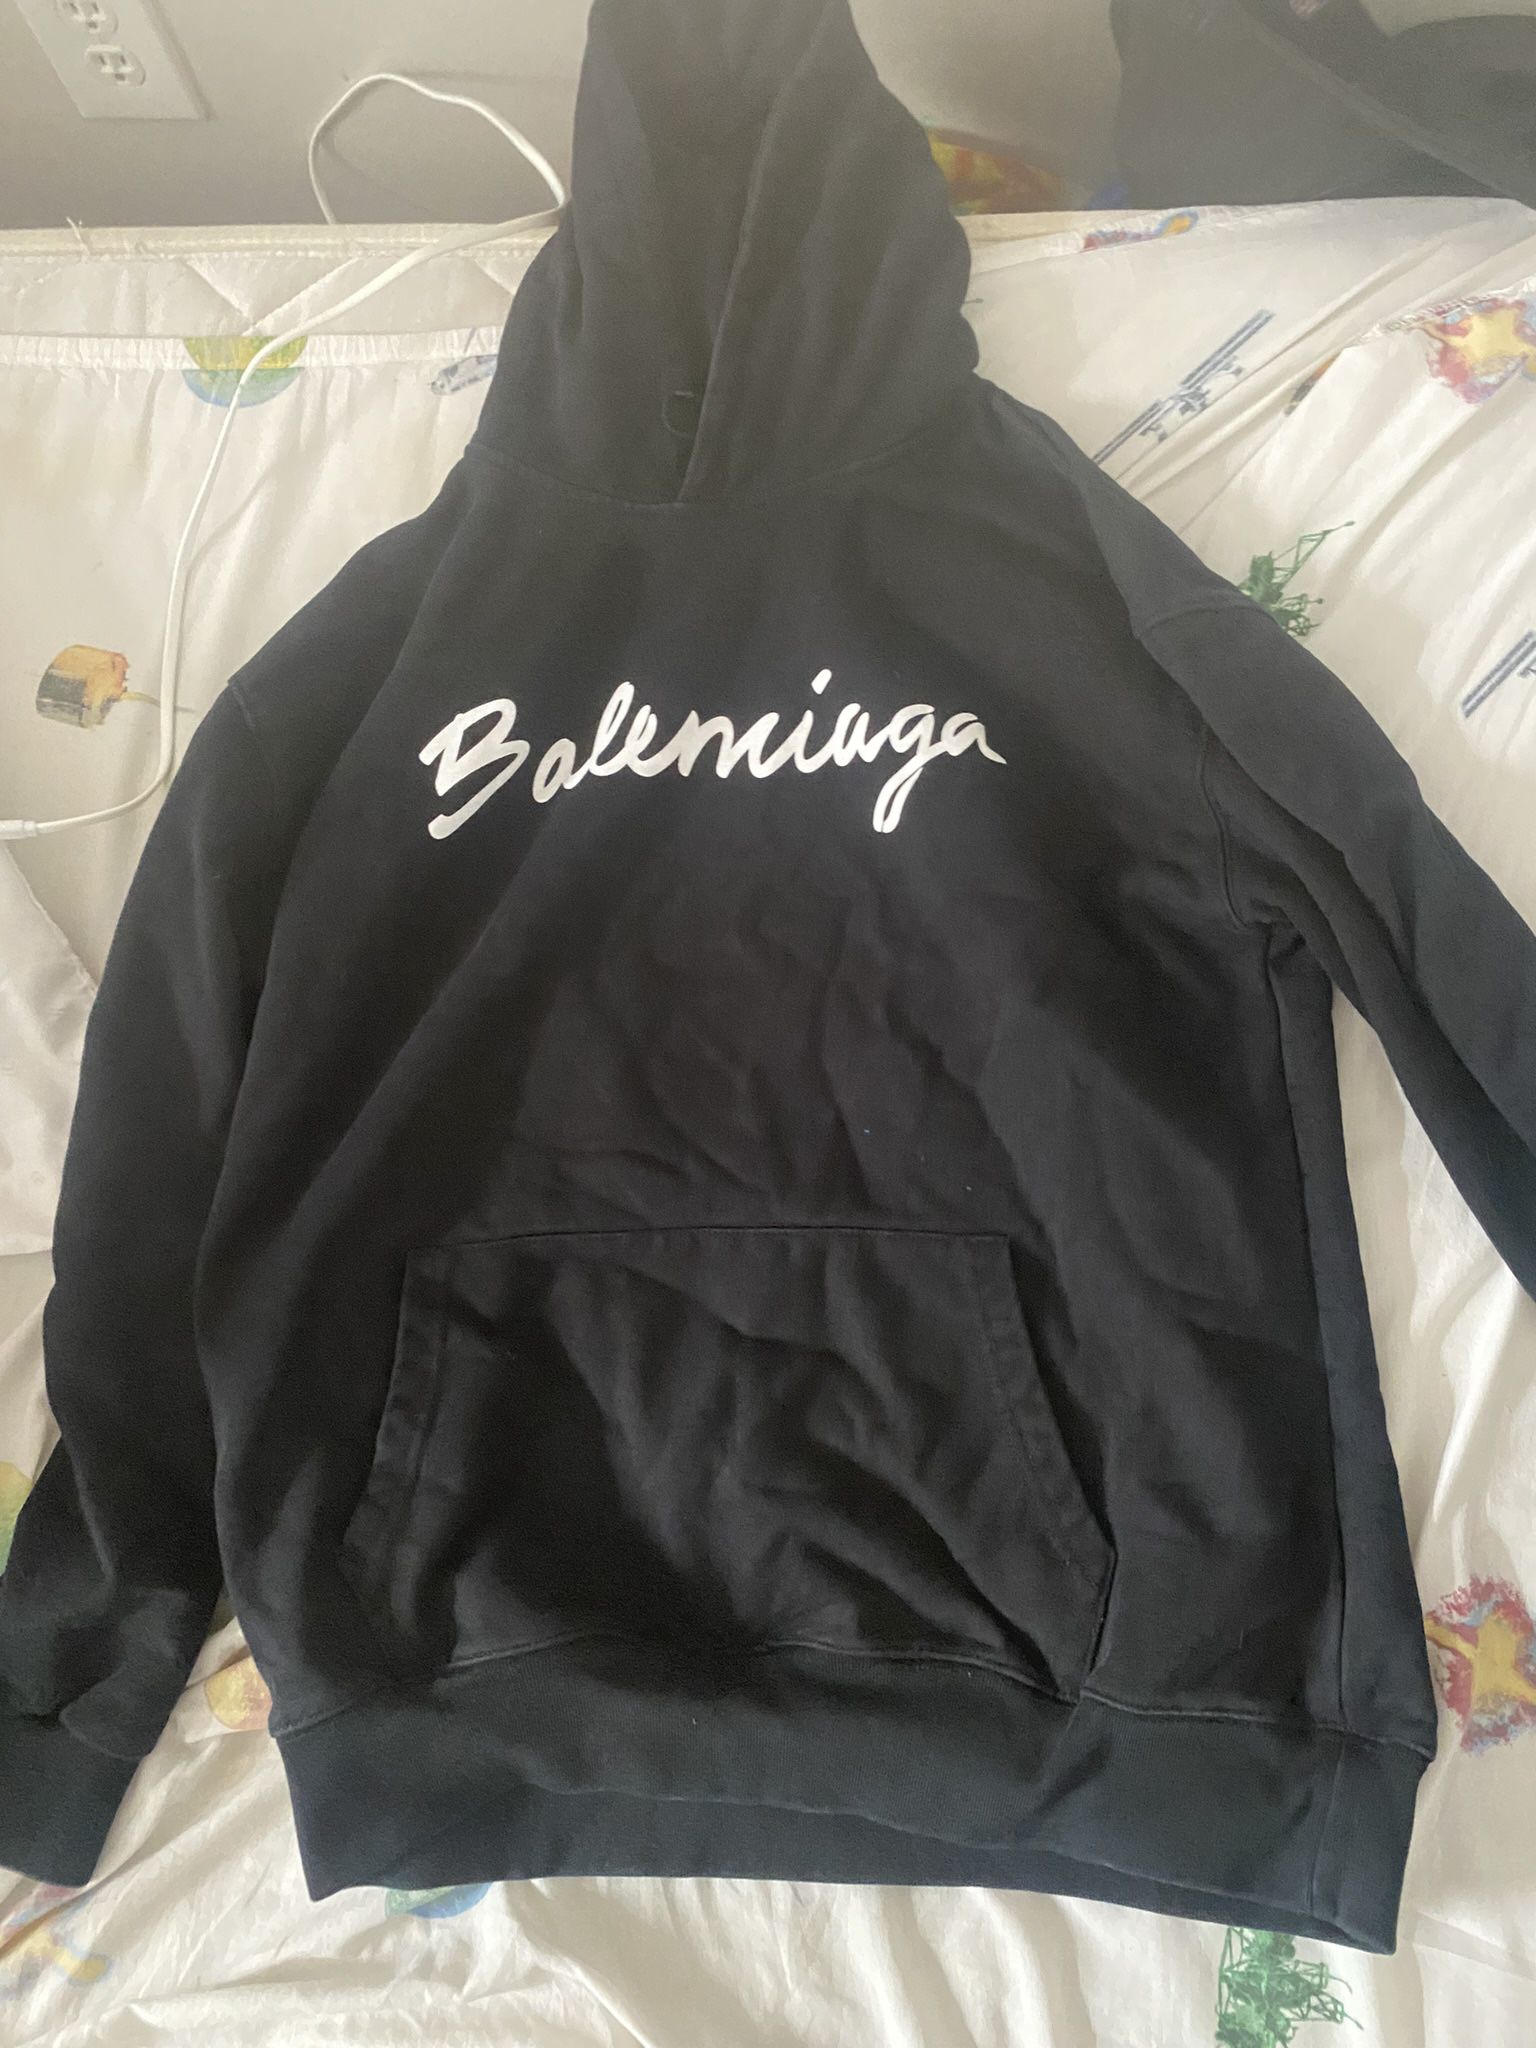 Balenciaga hoodie 